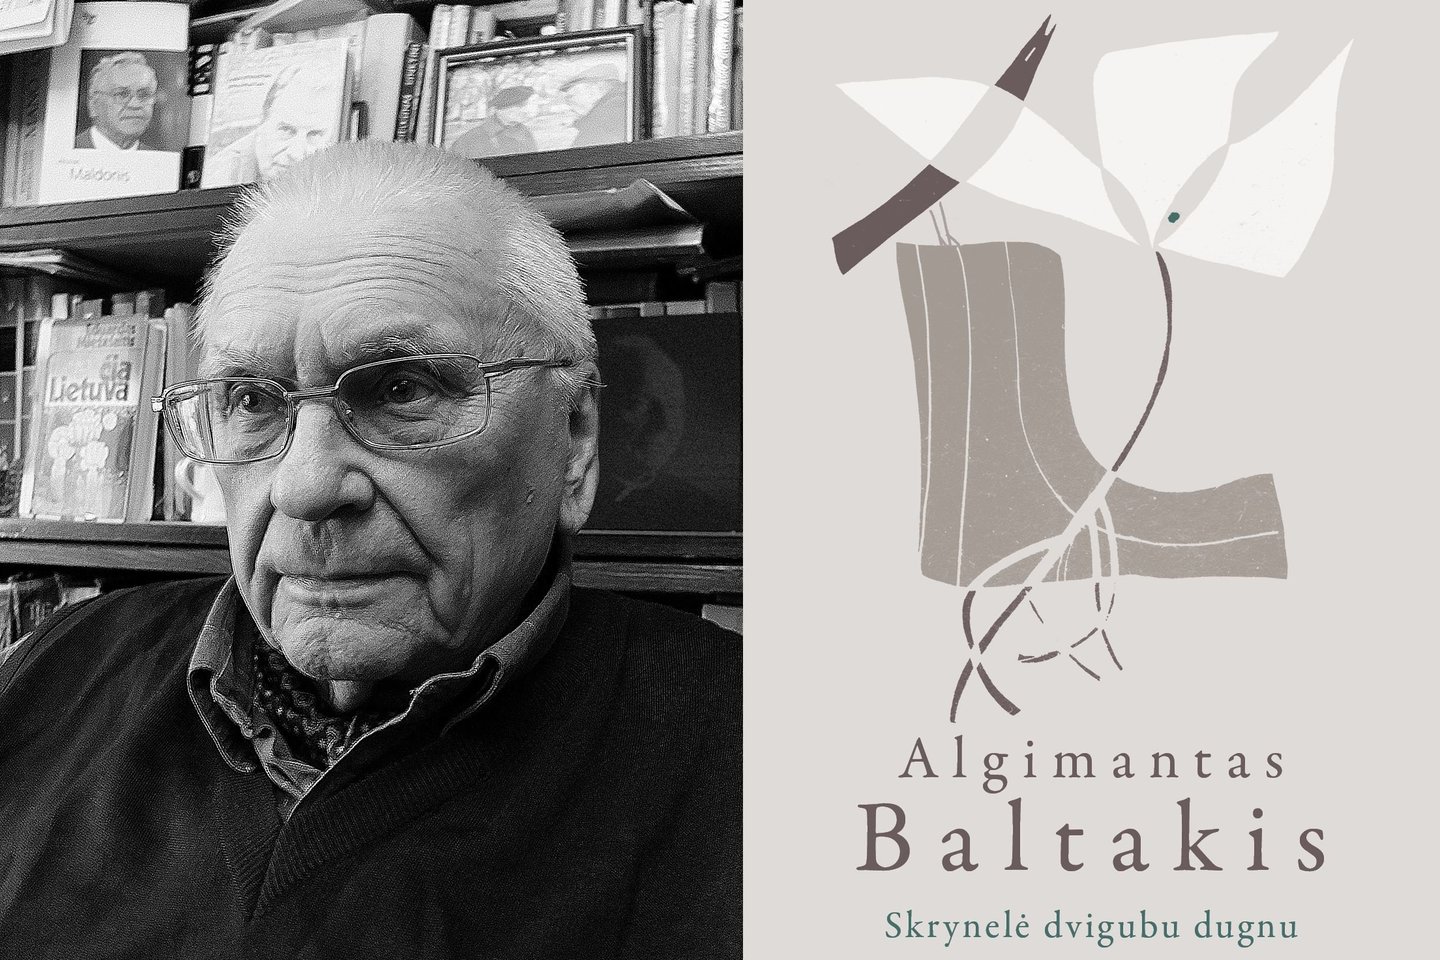  Poetas Algimantas Baltakis ir naujausia jo knyga.<br> Leidėjų nuotr.